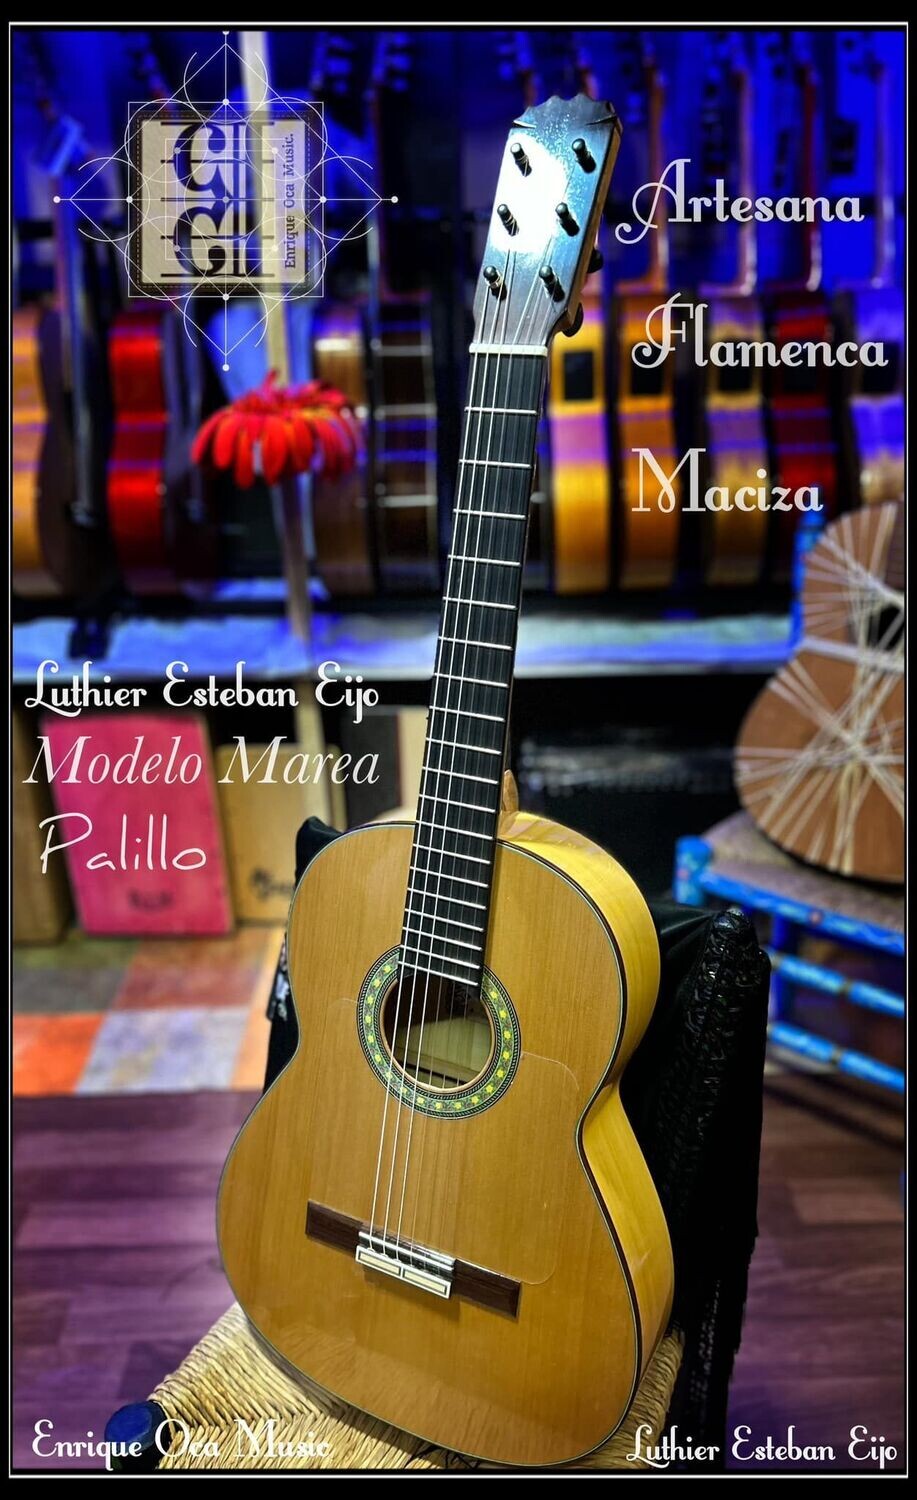 Guitarra artesana Flamenca Esteban Eijo Marea